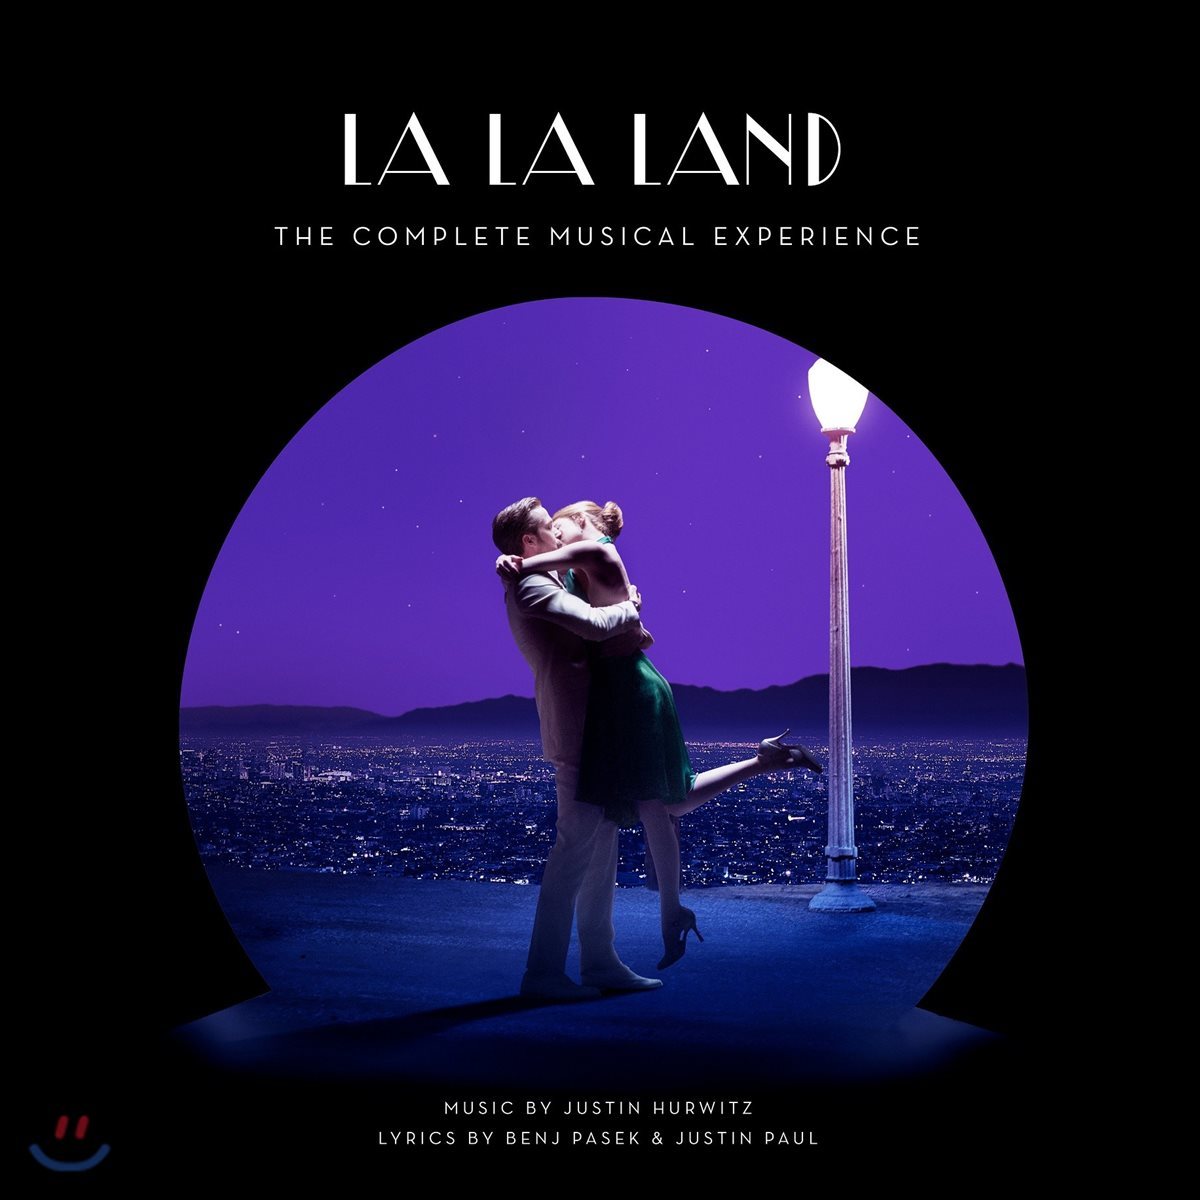 라라랜드 영화음악 합본반 (La La Land OST - The Complete Musical Experience by Justin Hurwitz 저스틴 허위츠)